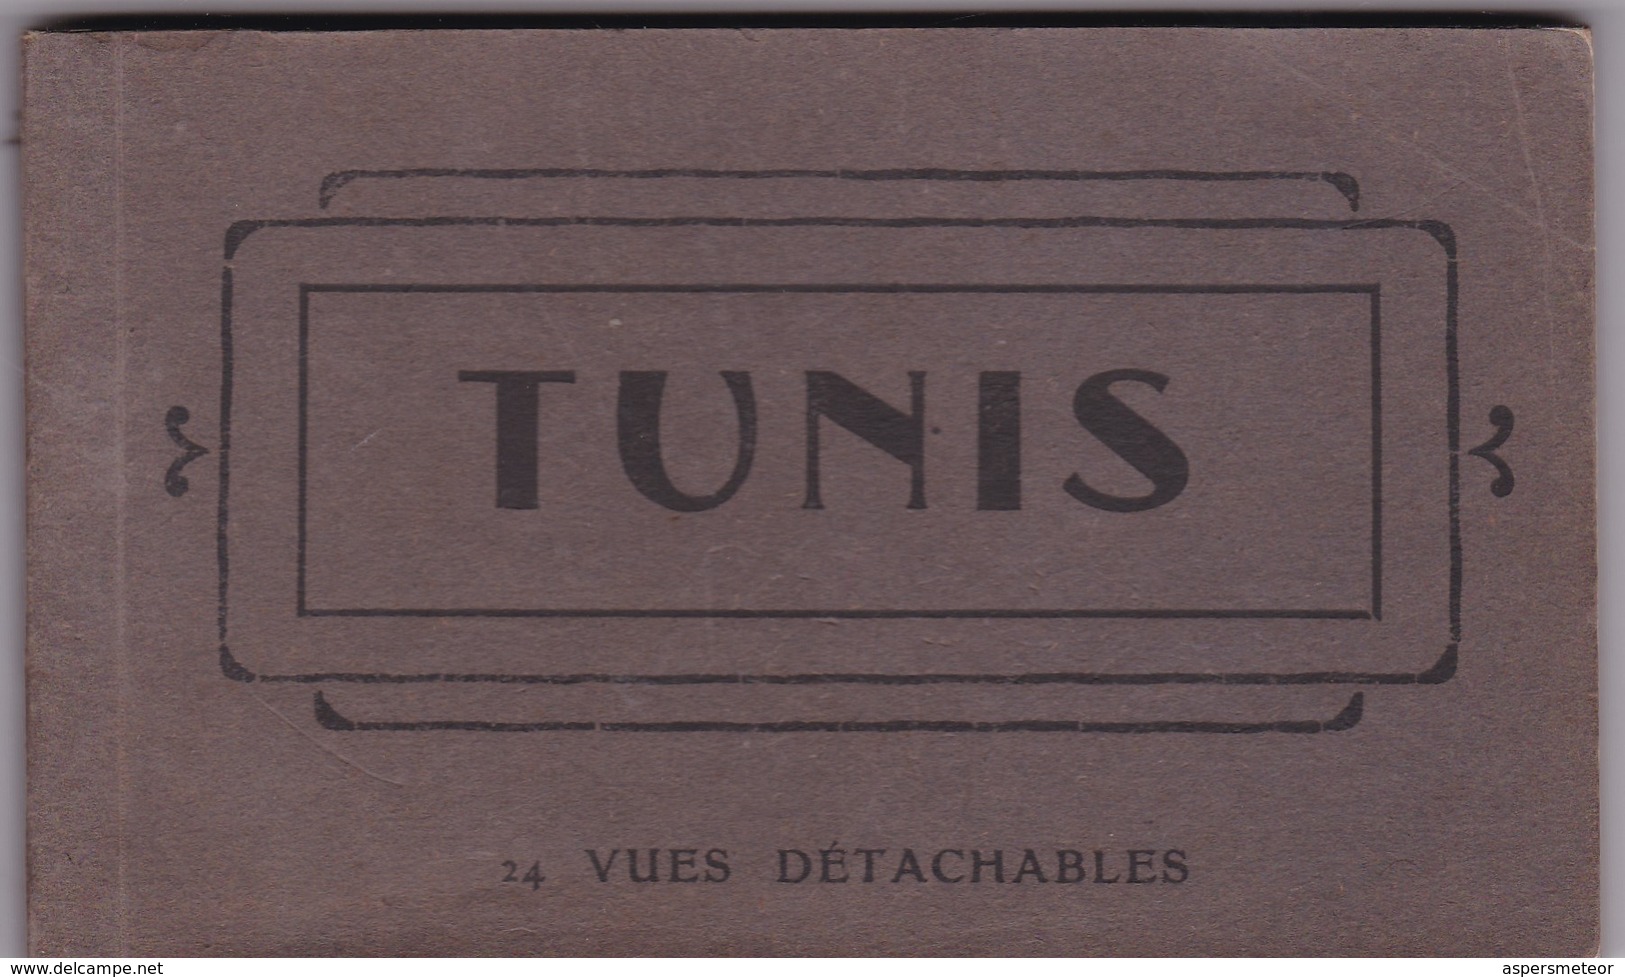 TUNIS, 24 VUES DETACHABLES. AM. PHOTOSET GRUSS AUS LEMBRANÇA SOUVENIR 1900s - BLEUP - Tunisia